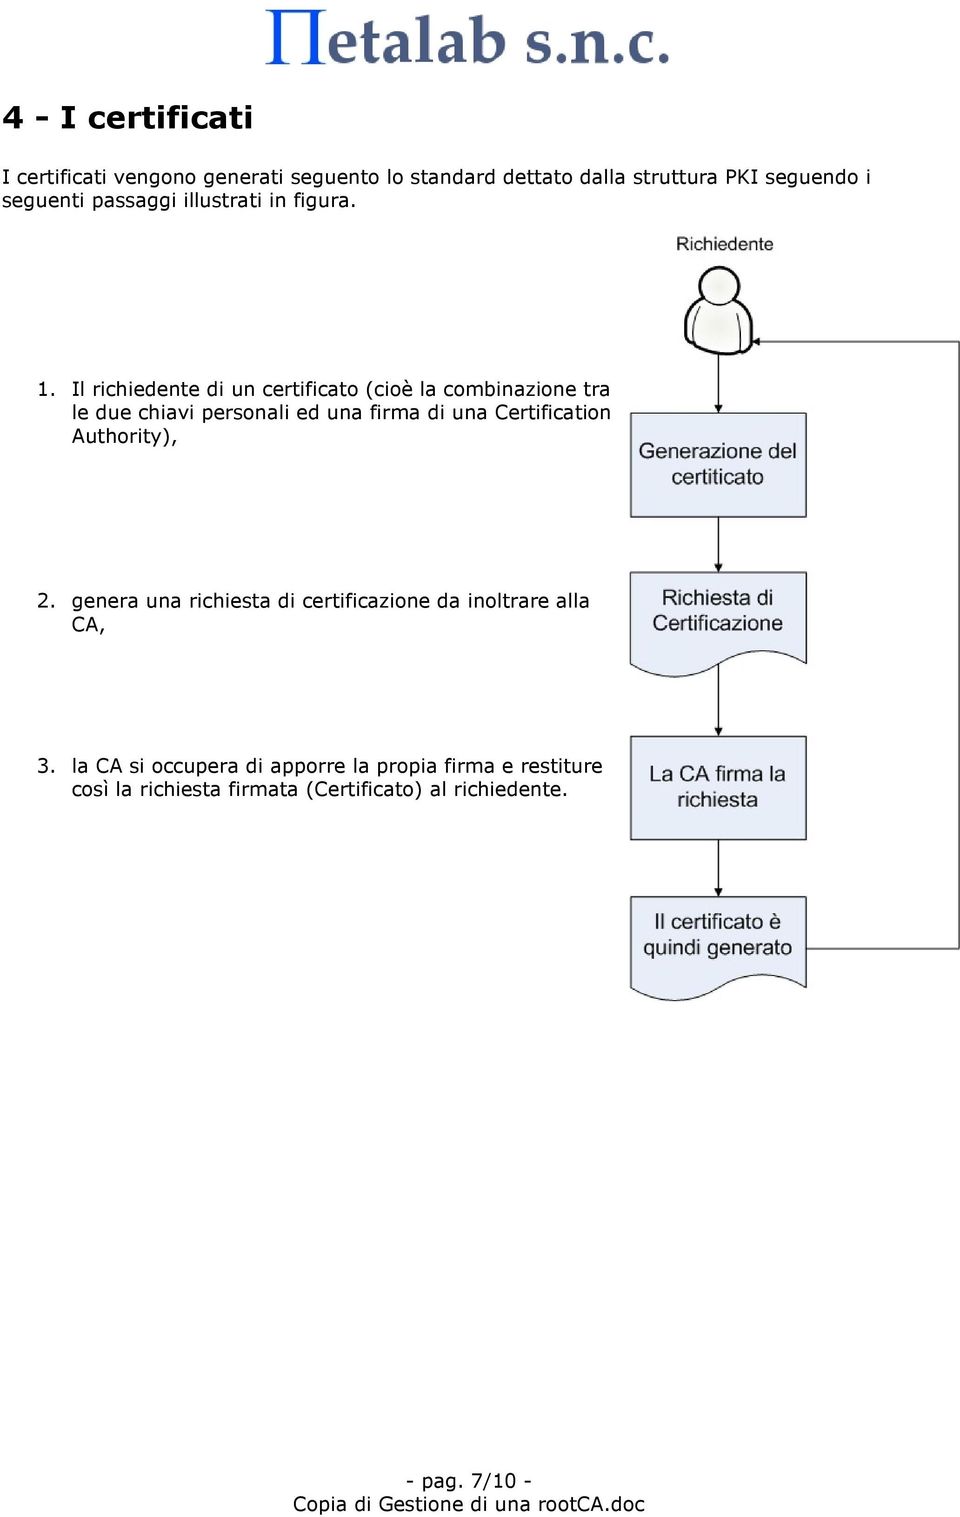 Il richiedente di un certificato (cioè la combinazione tra le due chiavi personali ed una firma di una Certification